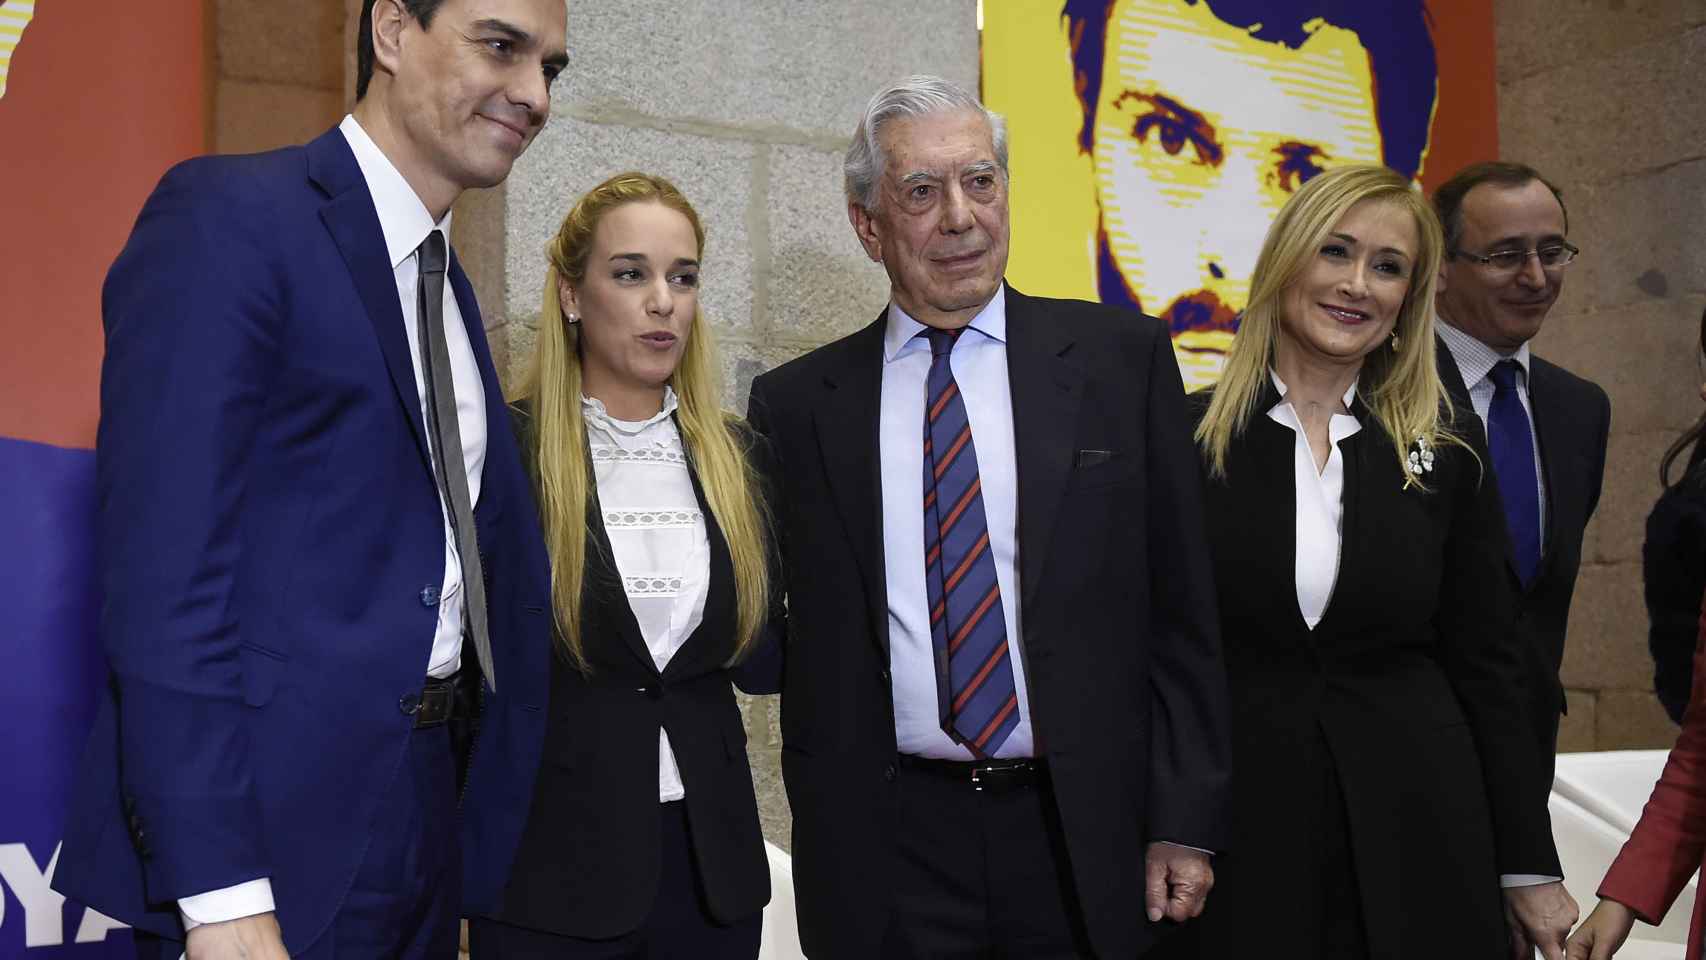 Lilian Tintori, Pedro Sánchez, Vargas Llosa y Cifuentes durante la presentación del libro en Madrid